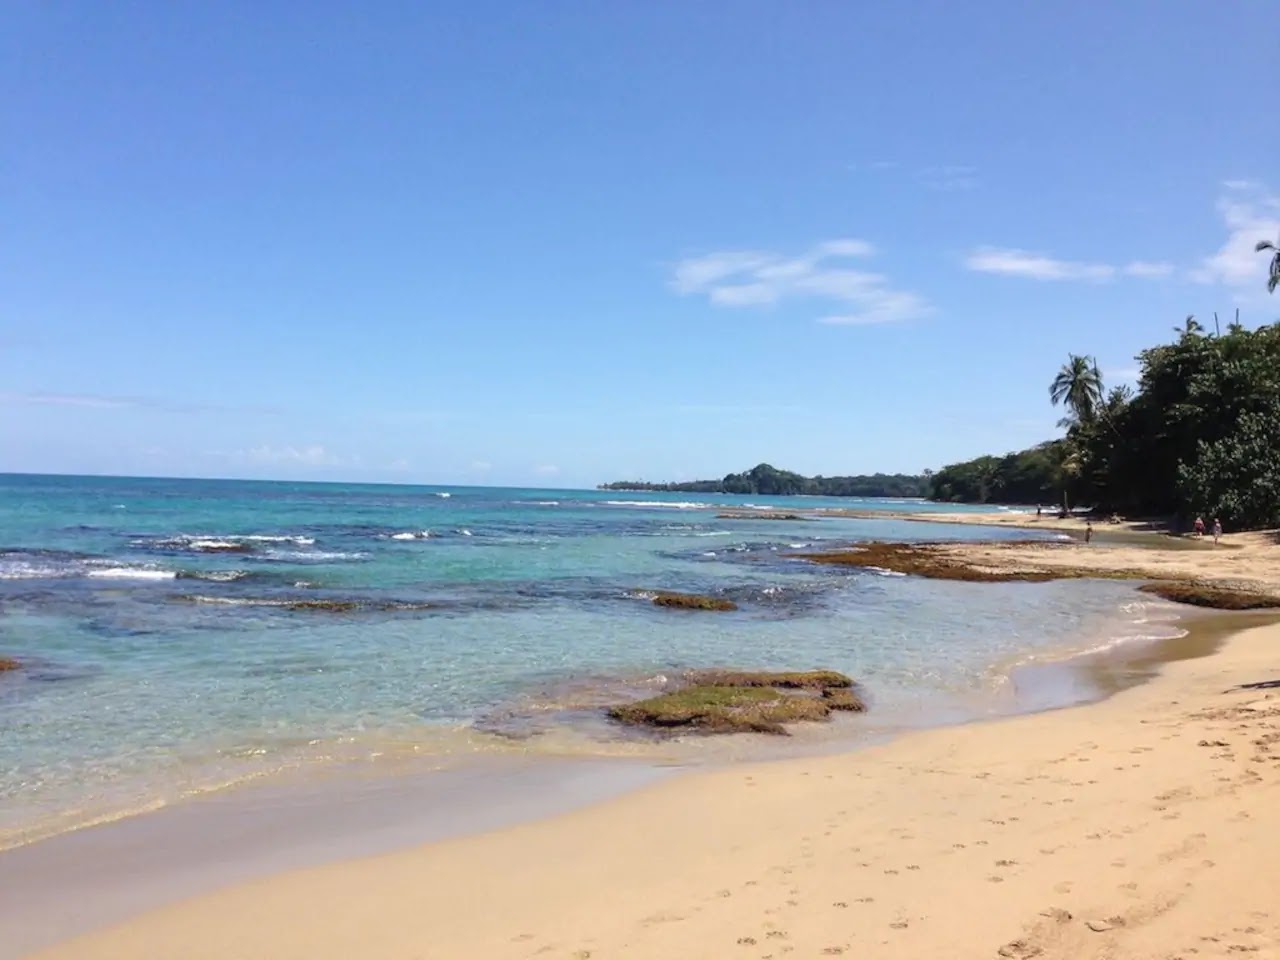 Fotografie cu Chiquita beach cu plajă spațioasă